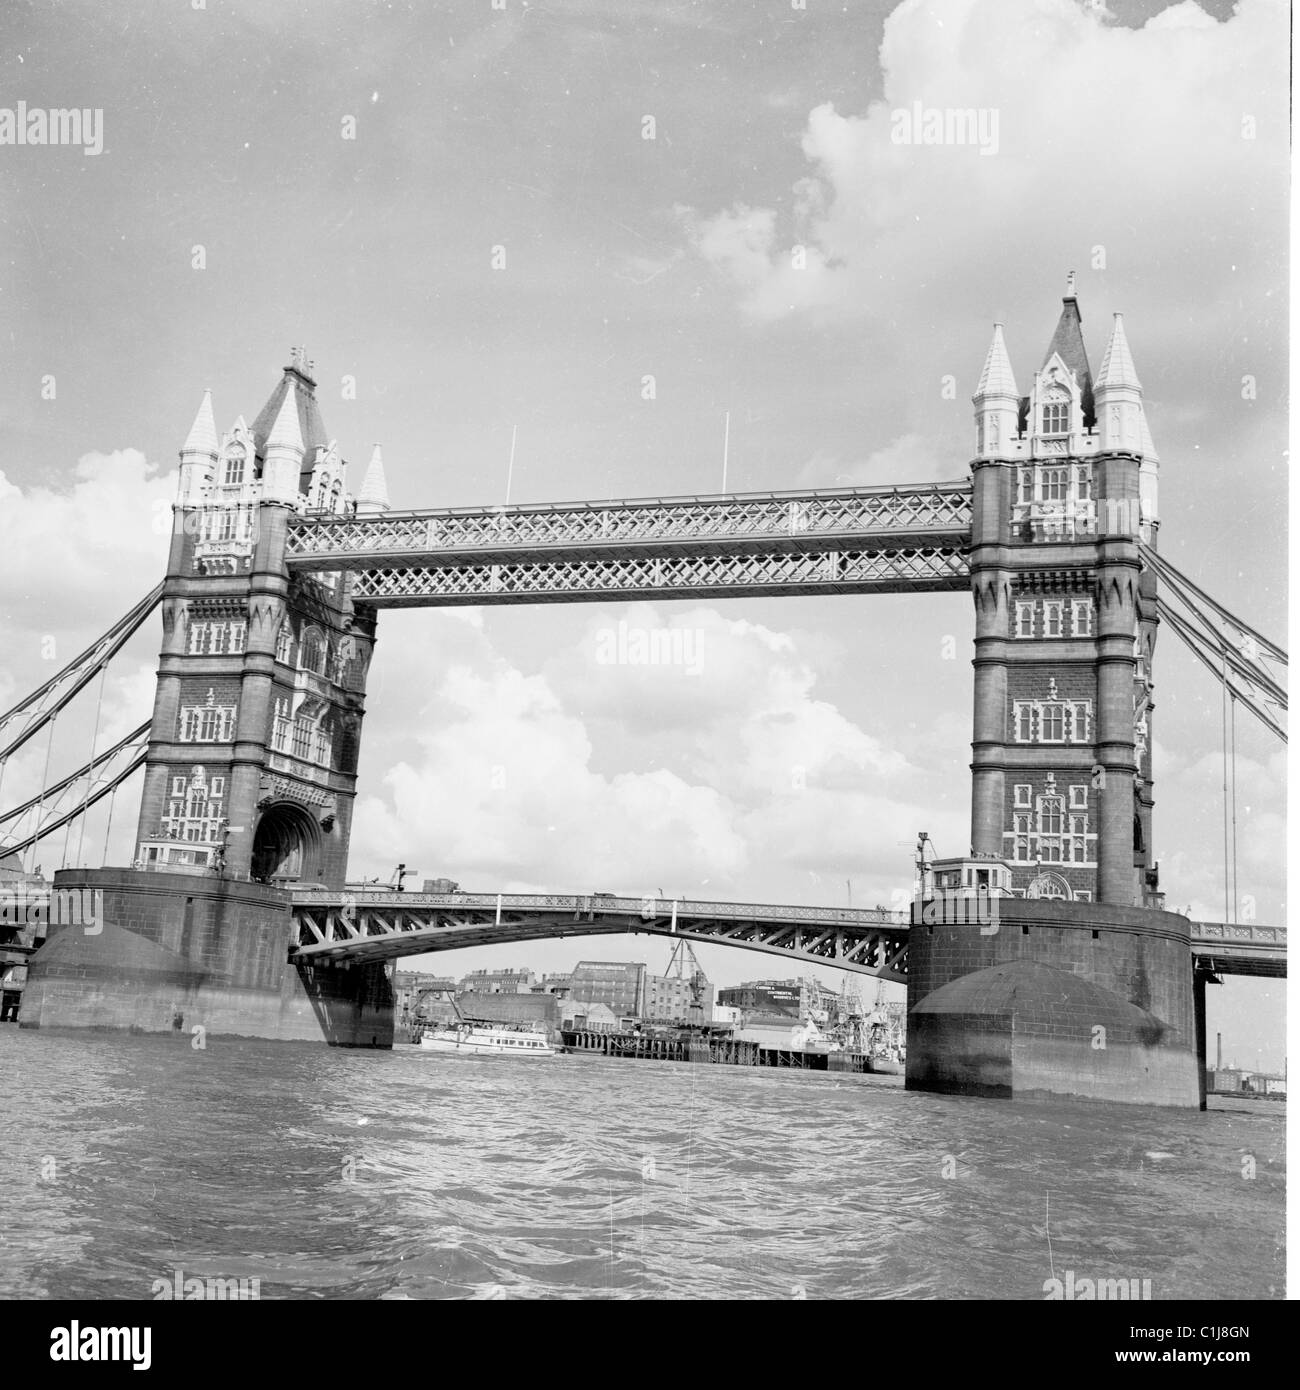 Années 1950, Tower Bridge, River Thames, un pont bascule et suspendu construit dans le style gothique victorien pour correspondre à la Tour de Londres voisine, ouvert en 1894. Banque D'Images